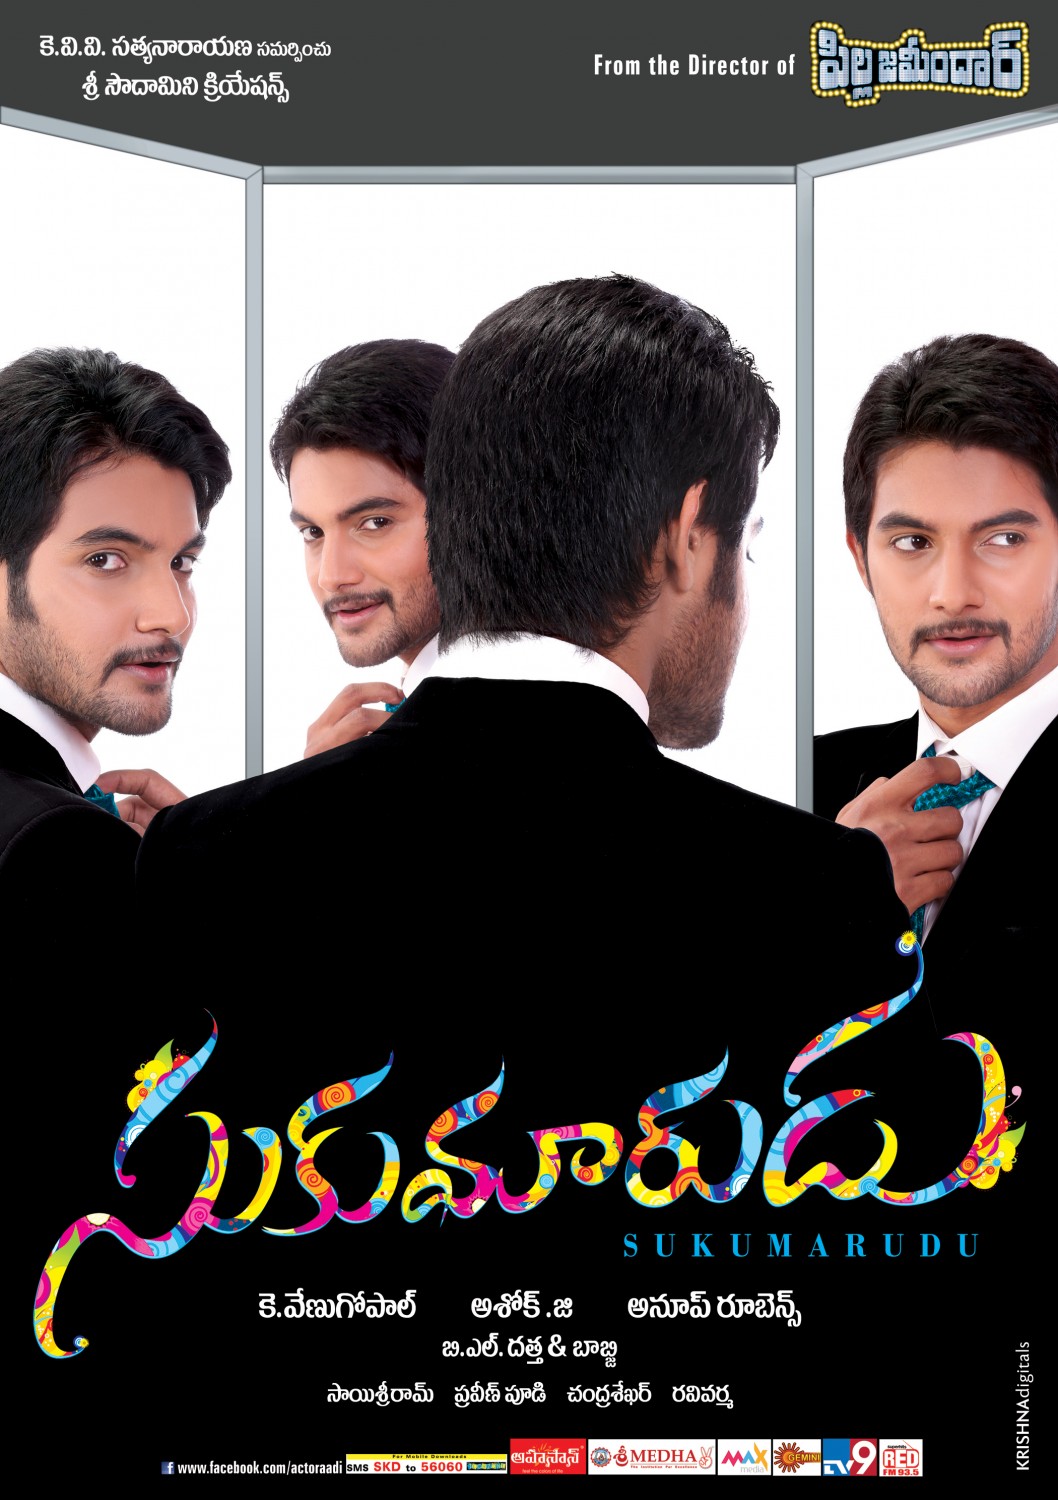 Extra Large Movie Poster Image for Sukumarudu (#5 of 10)